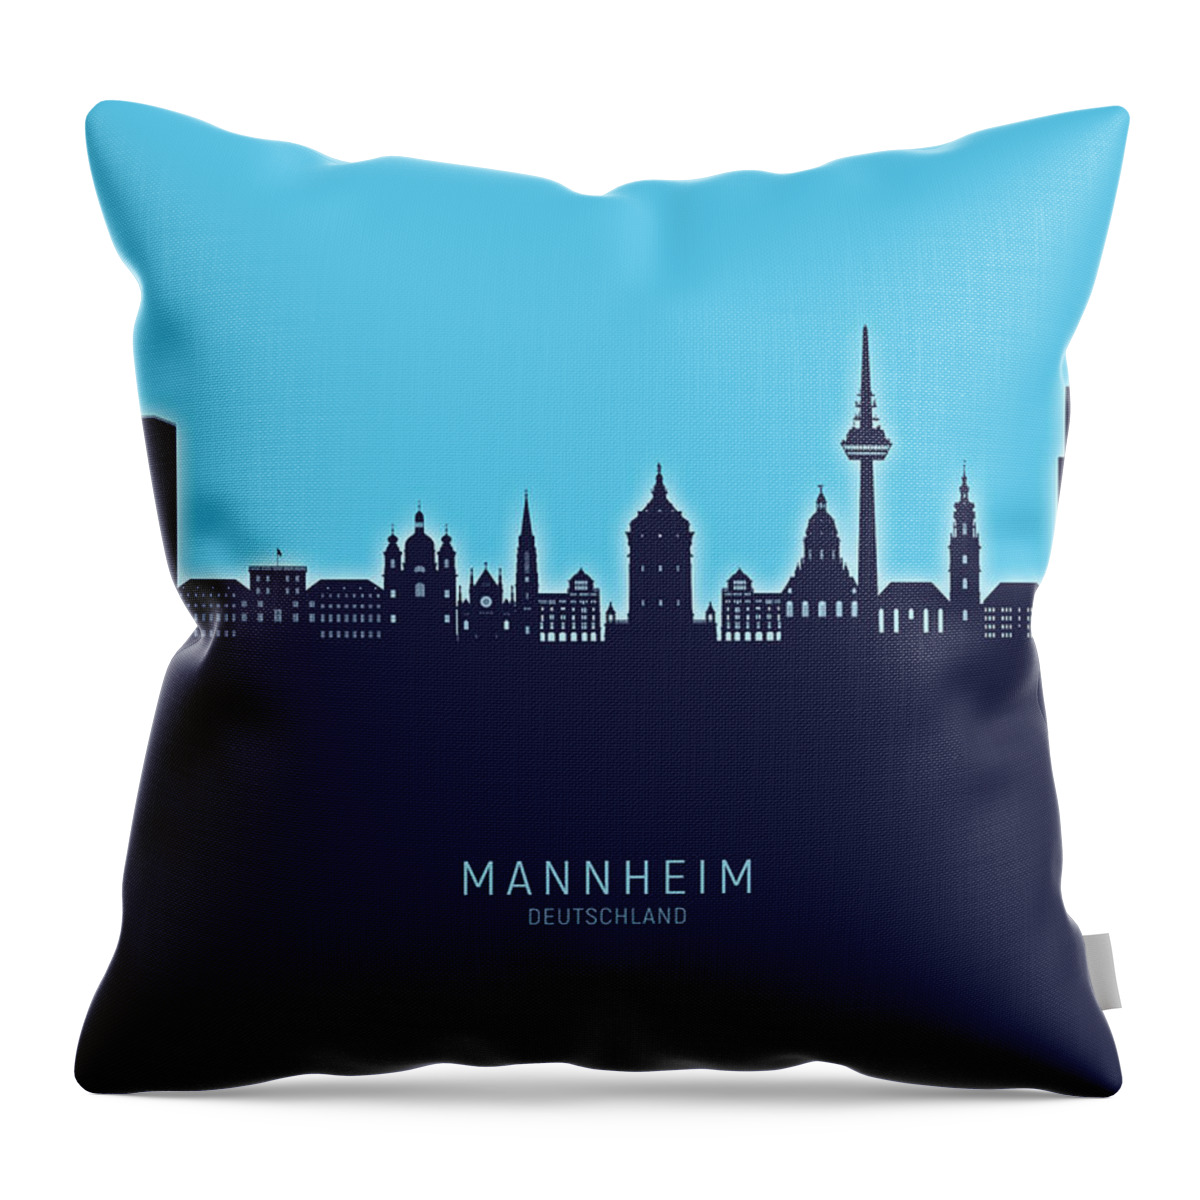 Mannheim Throw Pillow featuring the digital art Mannheim Germany Skyline #99 by Michael Tompsett